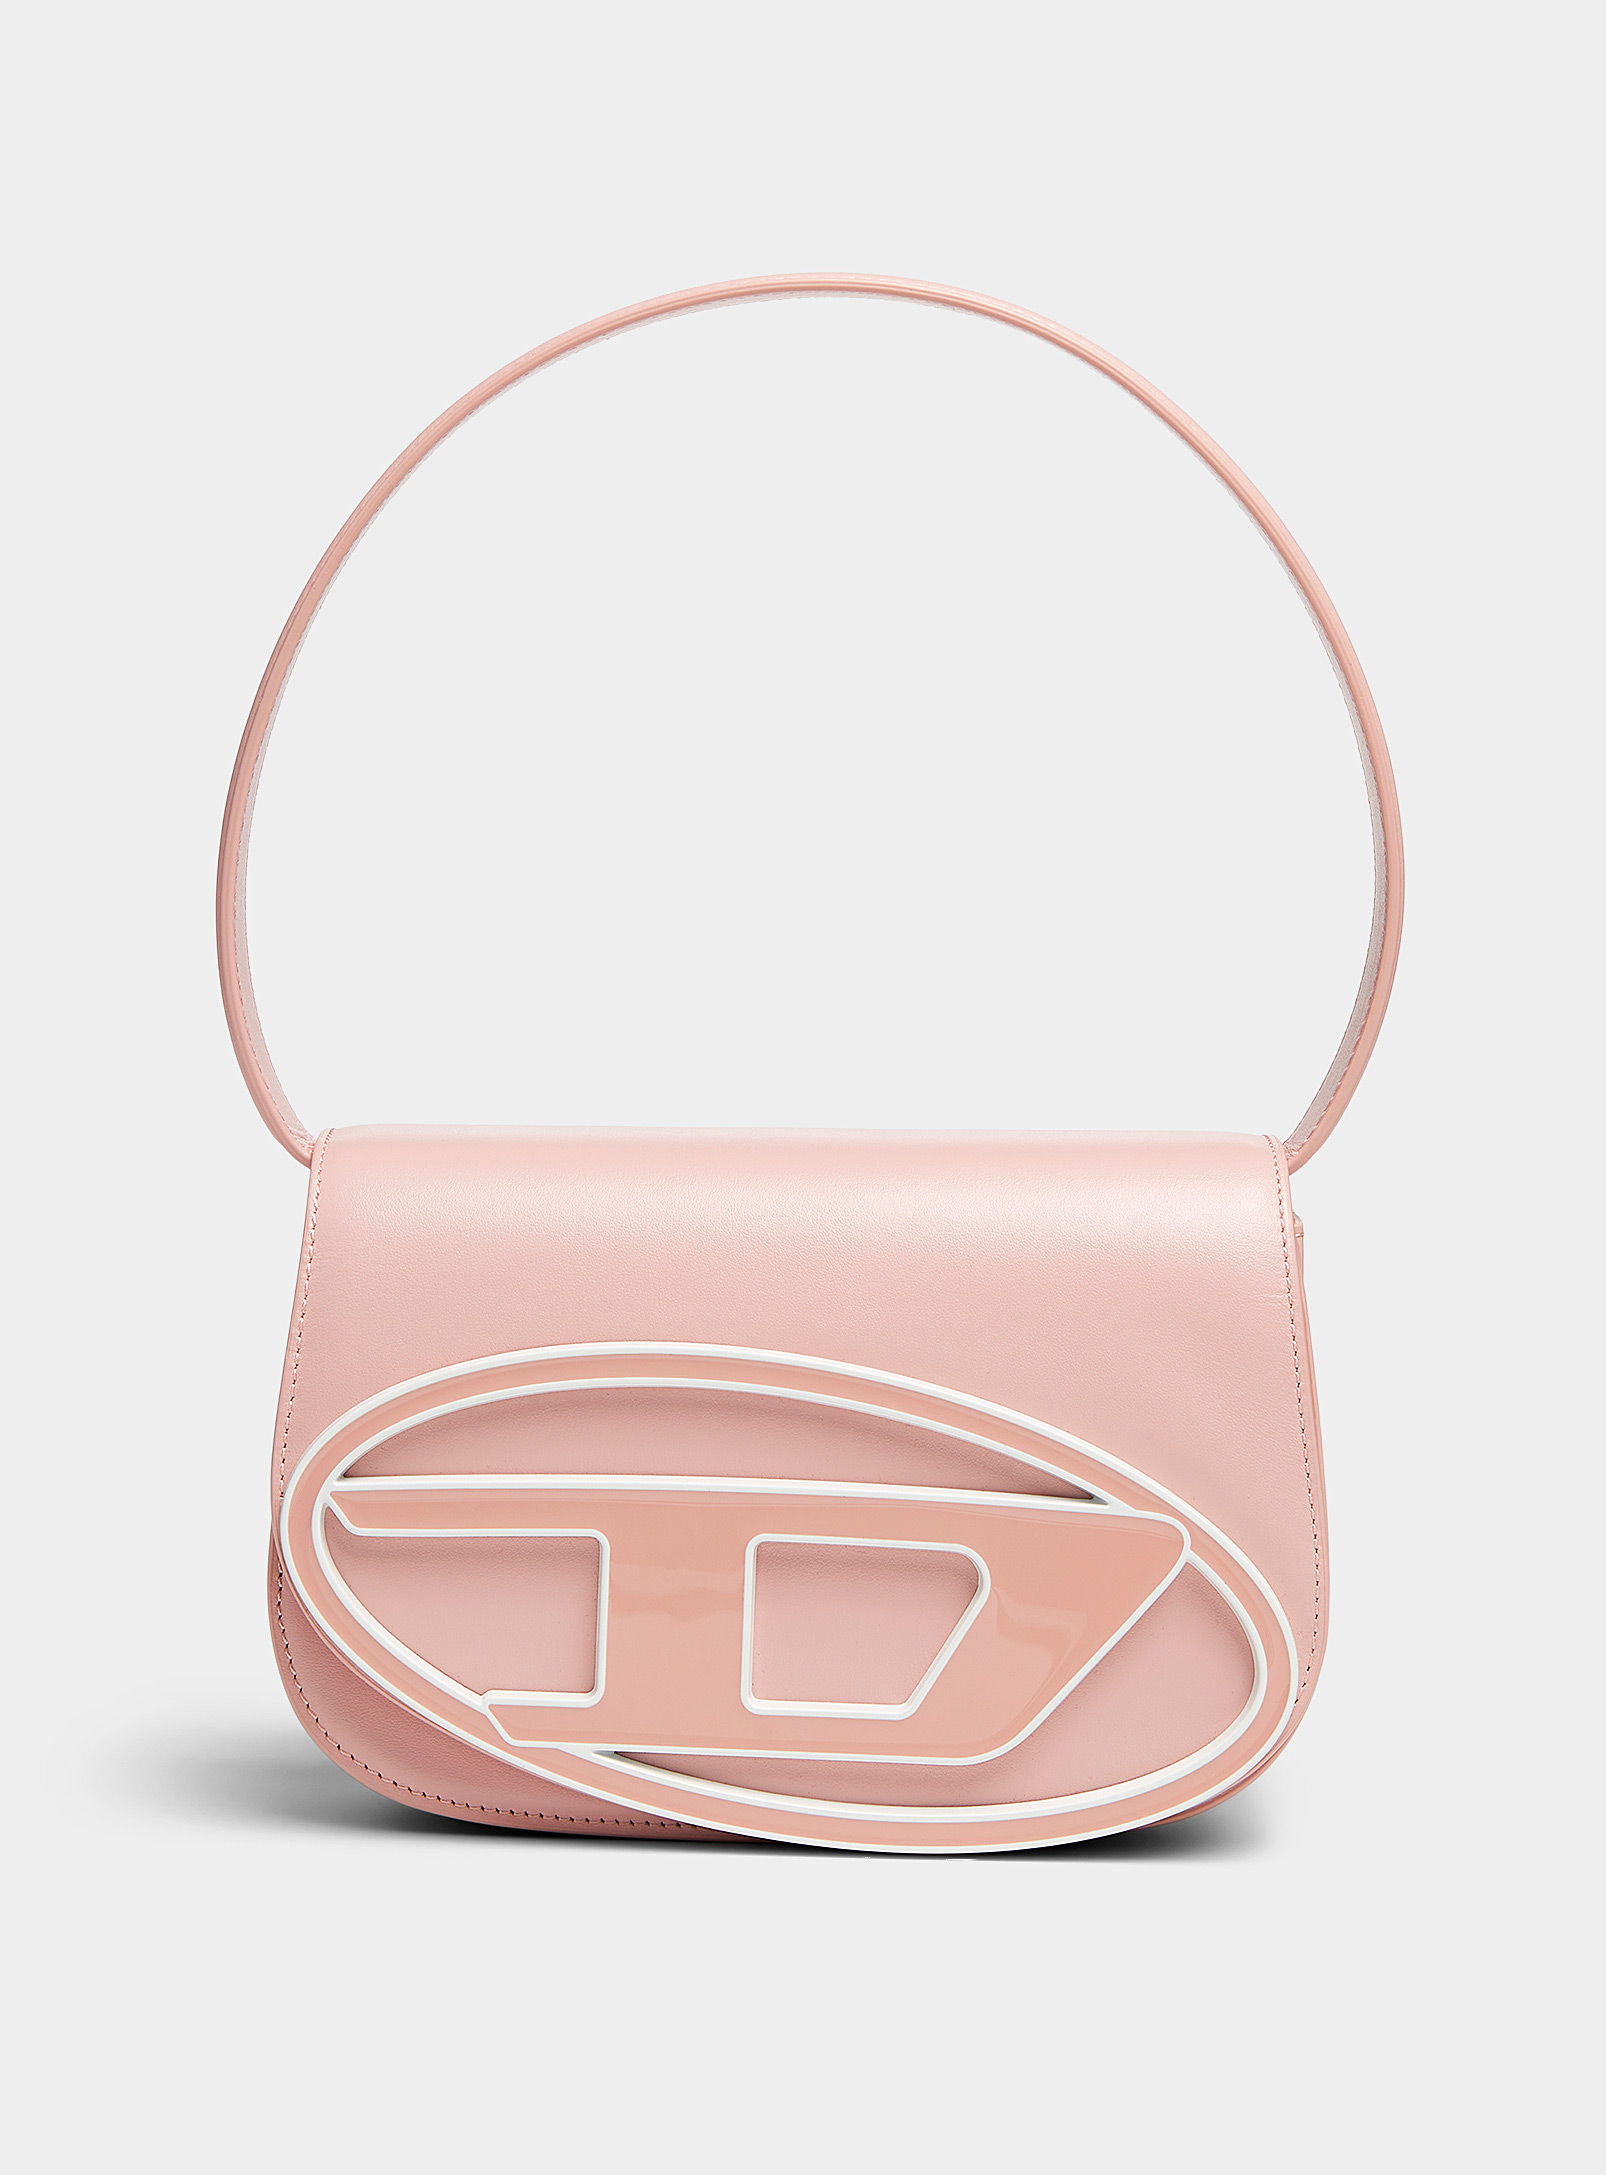 Diesel - Women's Pastel pink logo 1DR bag